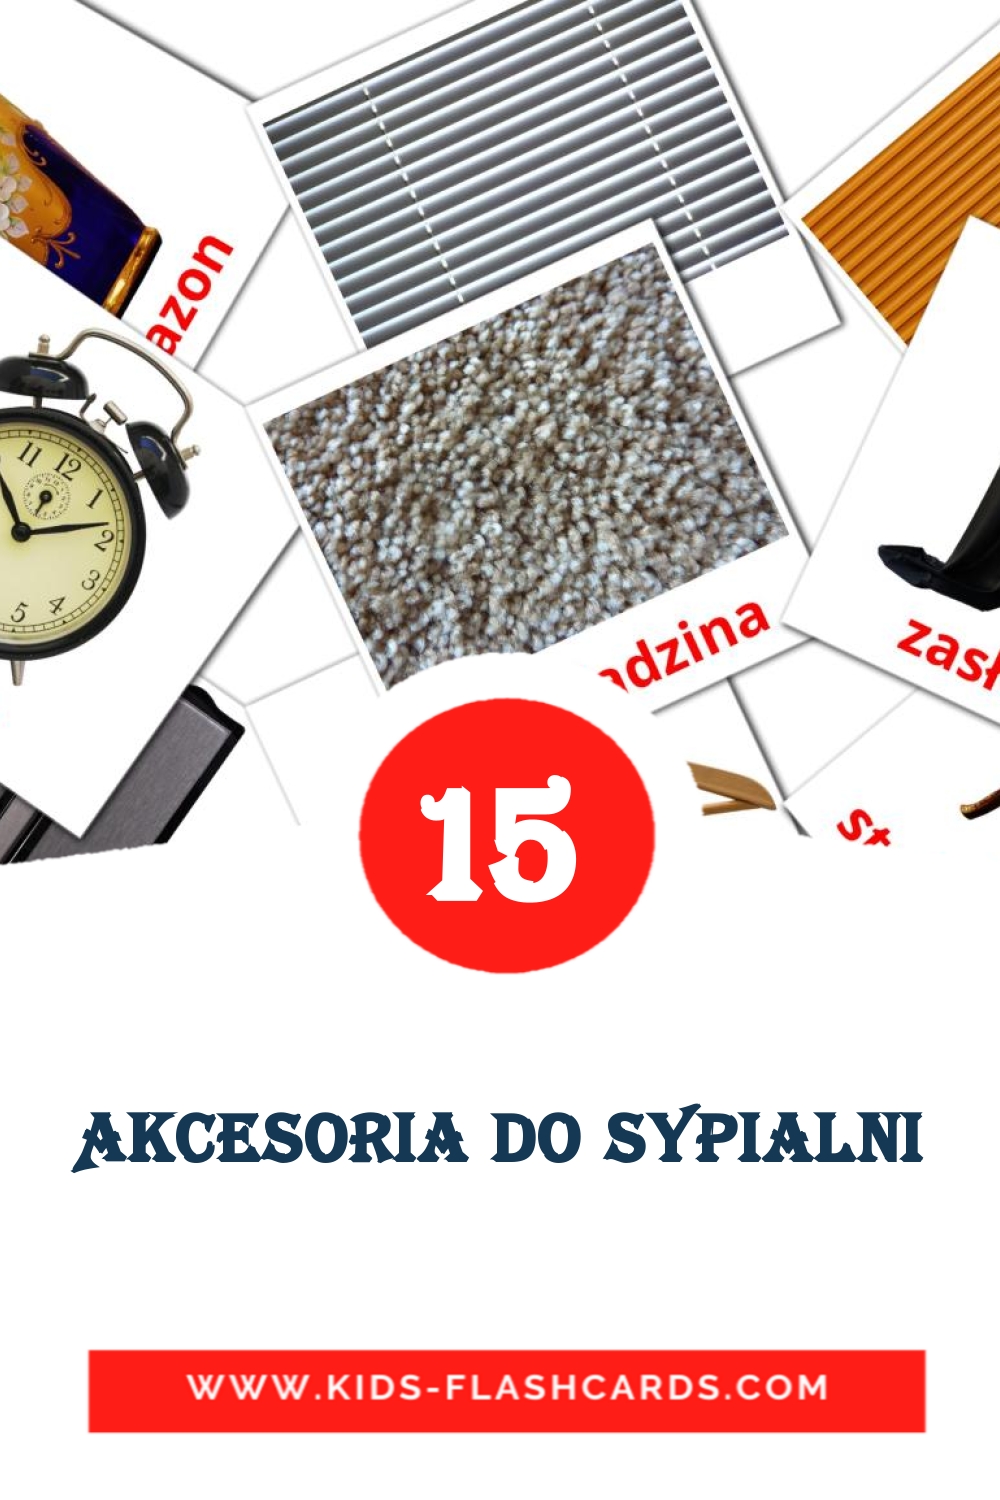 15 Cartões com Imagens de Akcesoria do Sypialni para Jardim de Infância em polaco